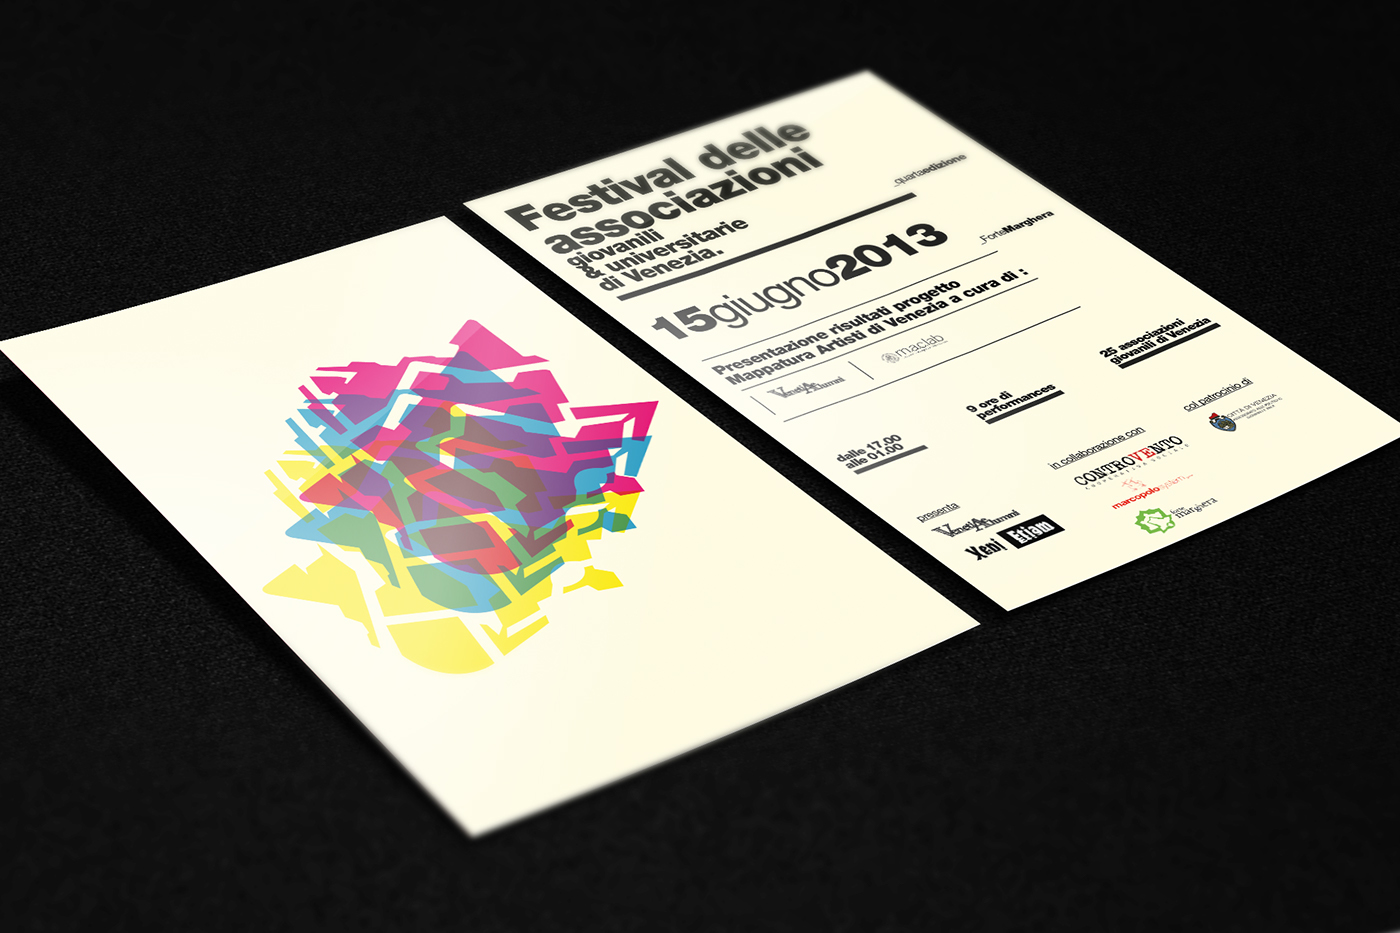 Venice festival graphic University poster flyer Event design colors art direction 